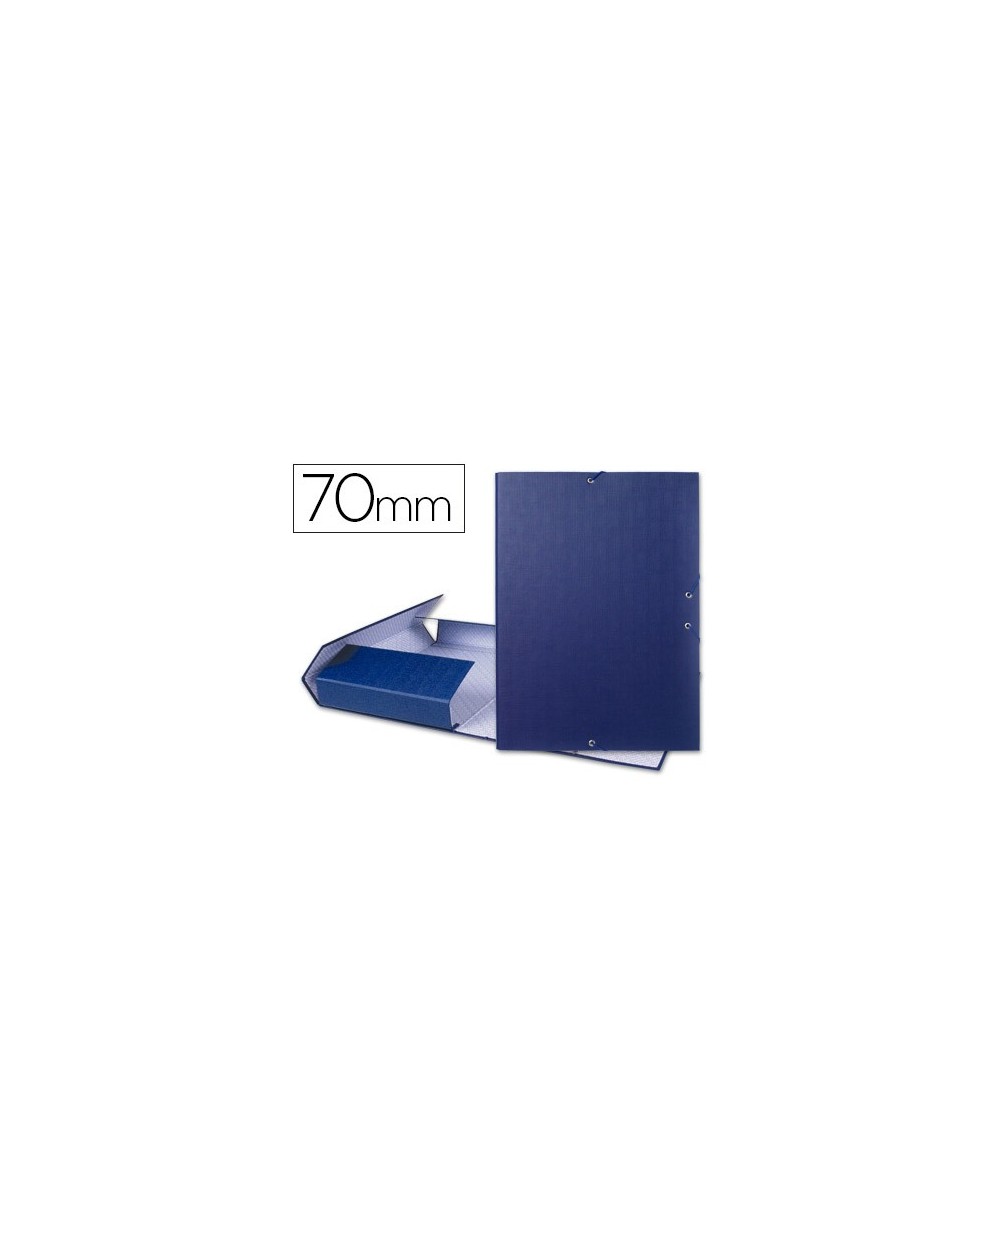 Carpeta proyectos liderpapel folio lomo 70mm carton forrado azul